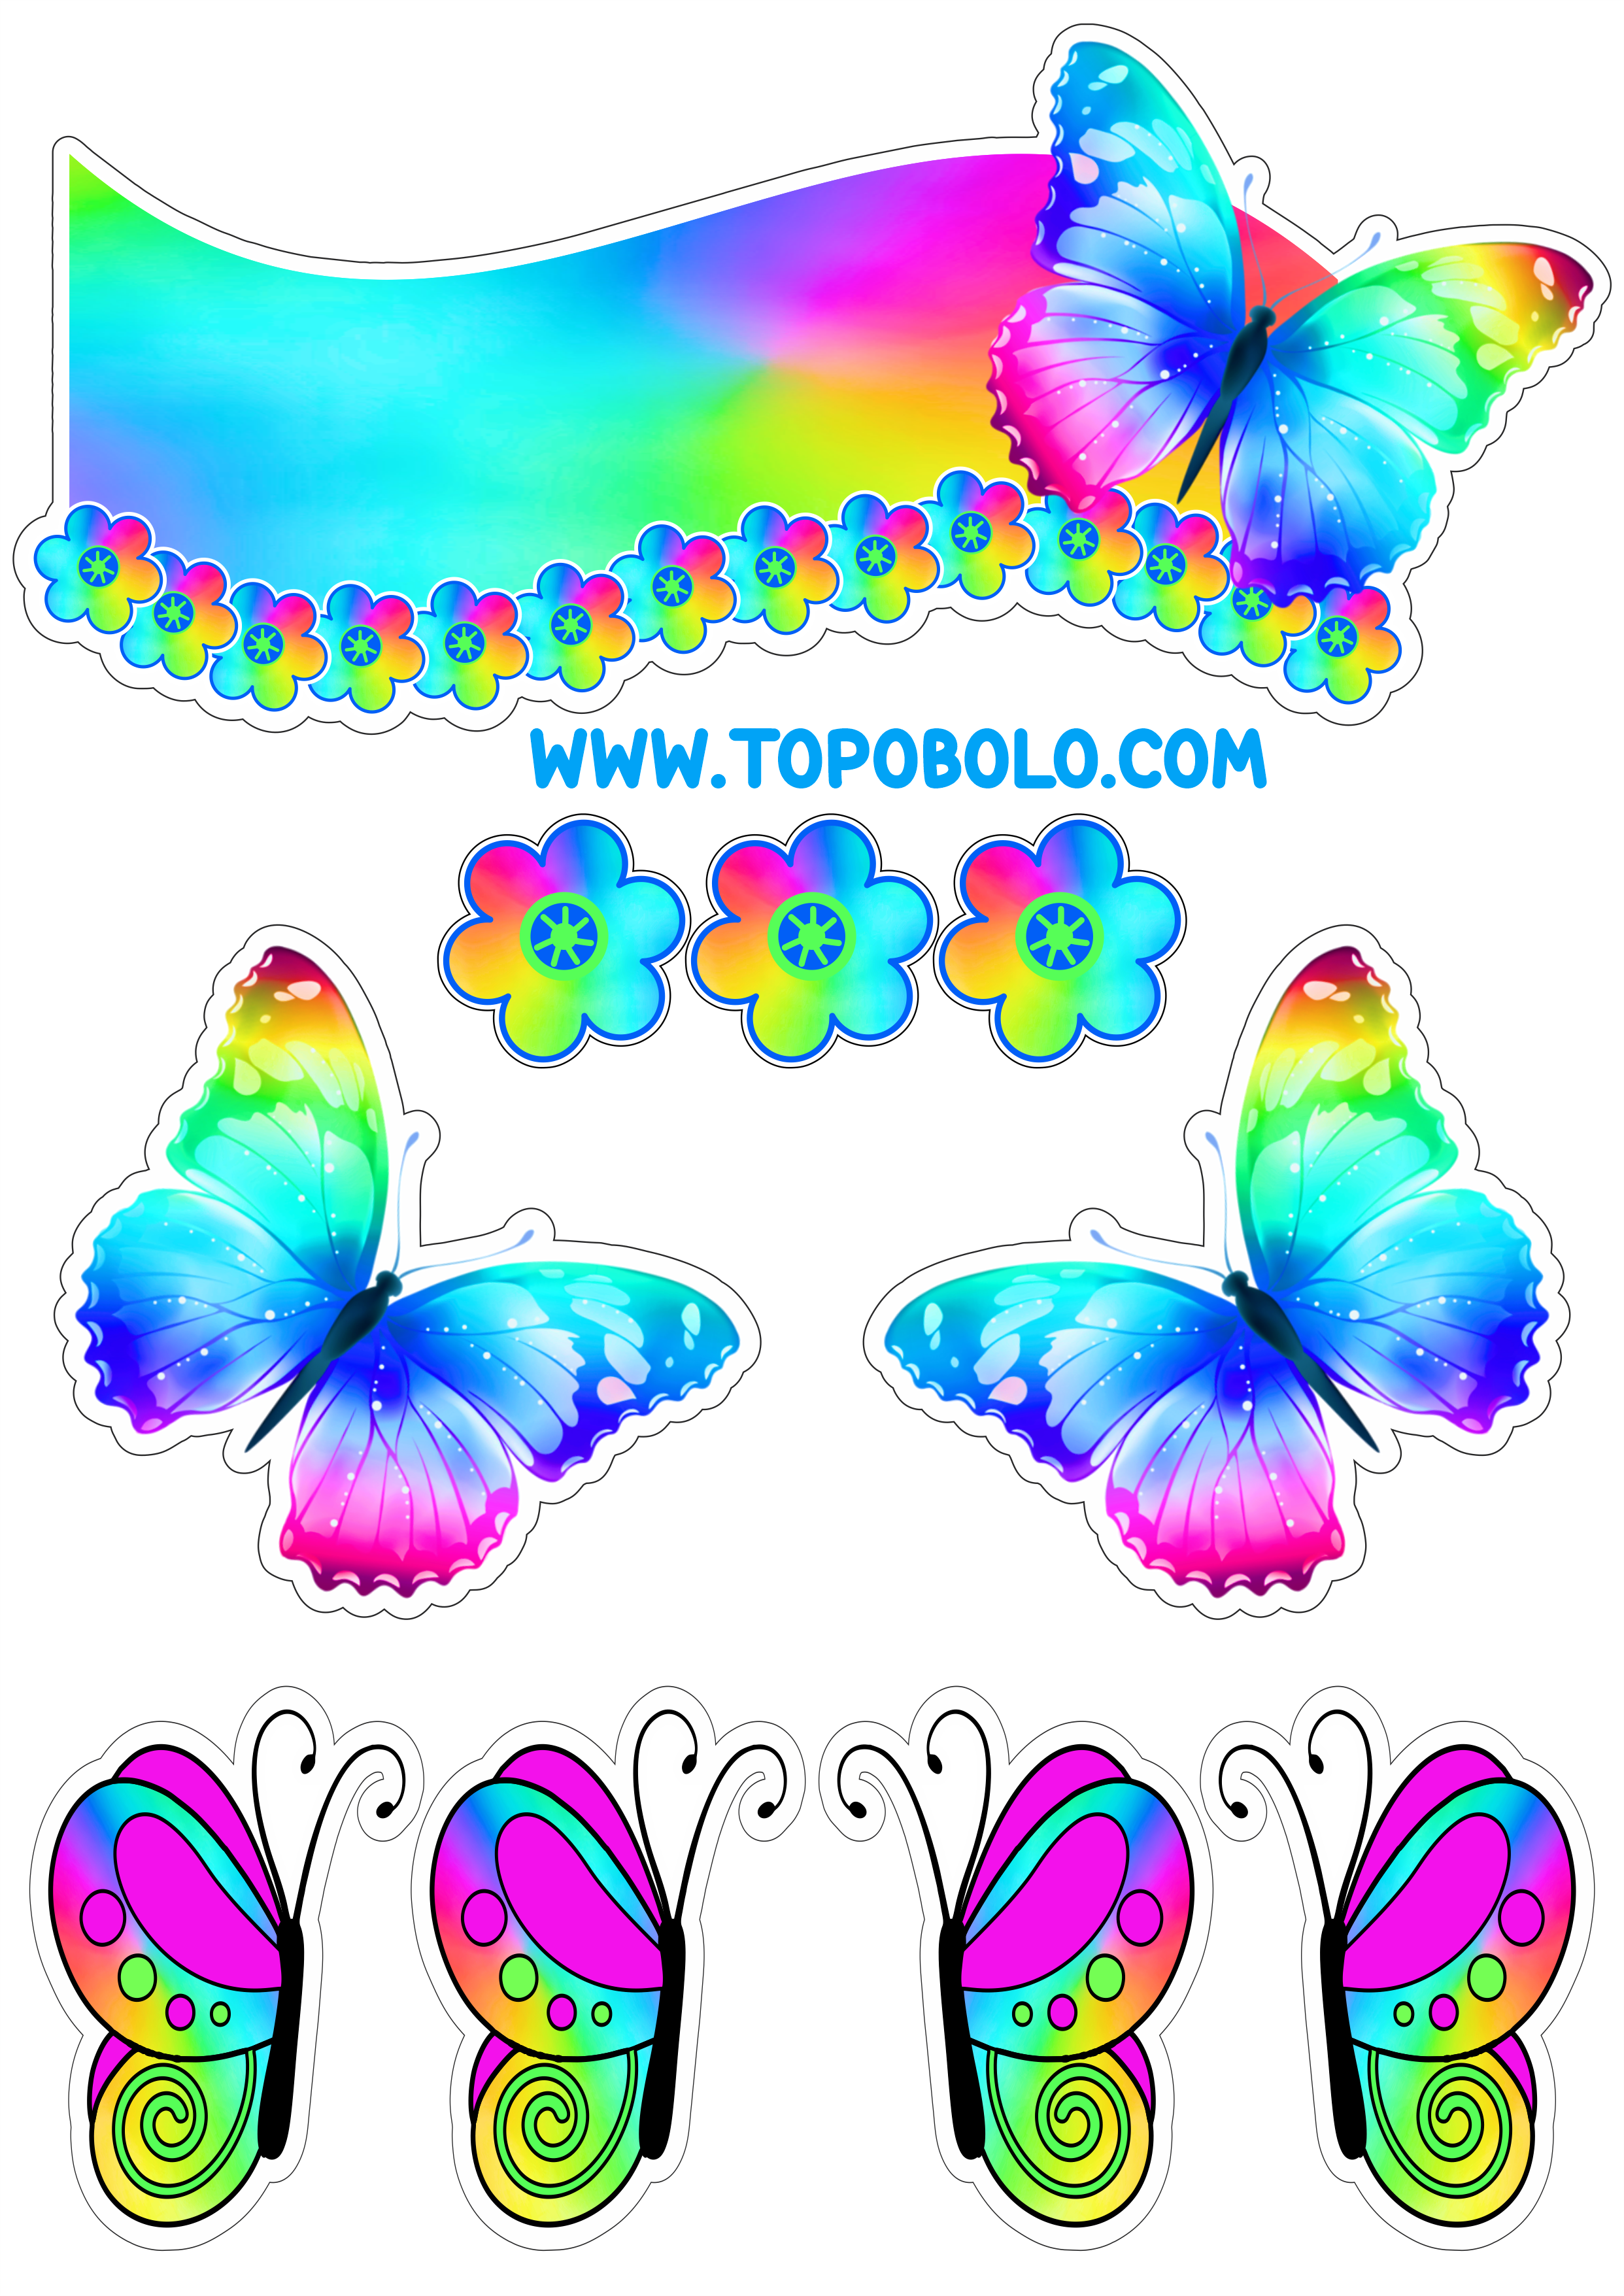 Topo de bolo para baixar borboletas e flores coloridas papelaria criativa com contorno para recorte festa pronta personalizados free png